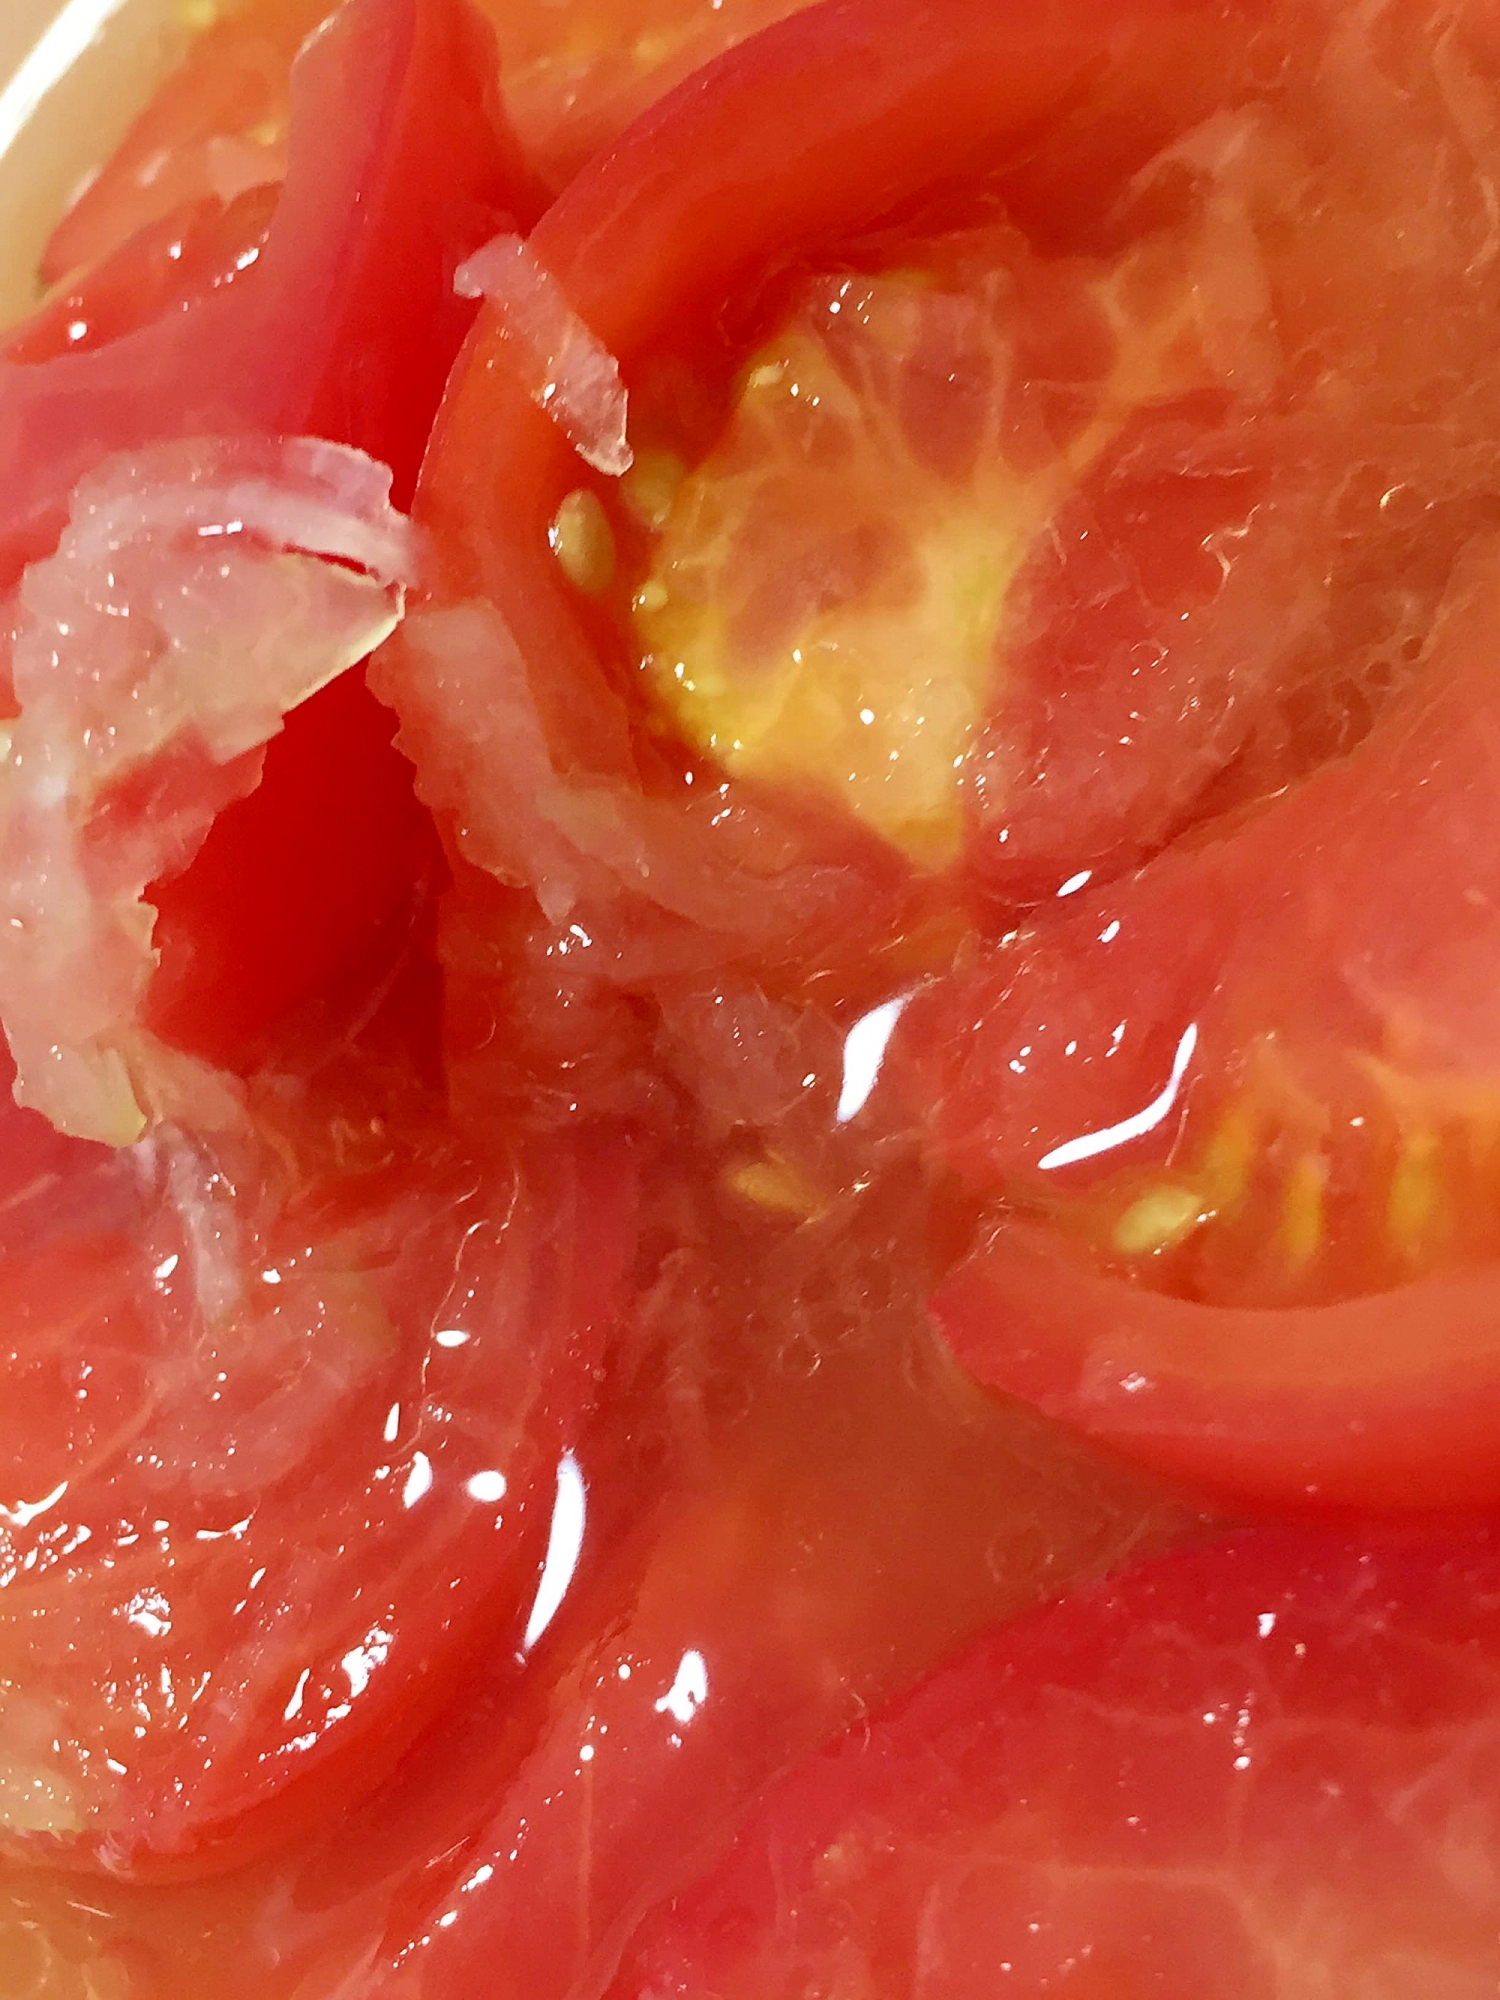 常備できるトマトレシピ(1)簡単トマトマリネ